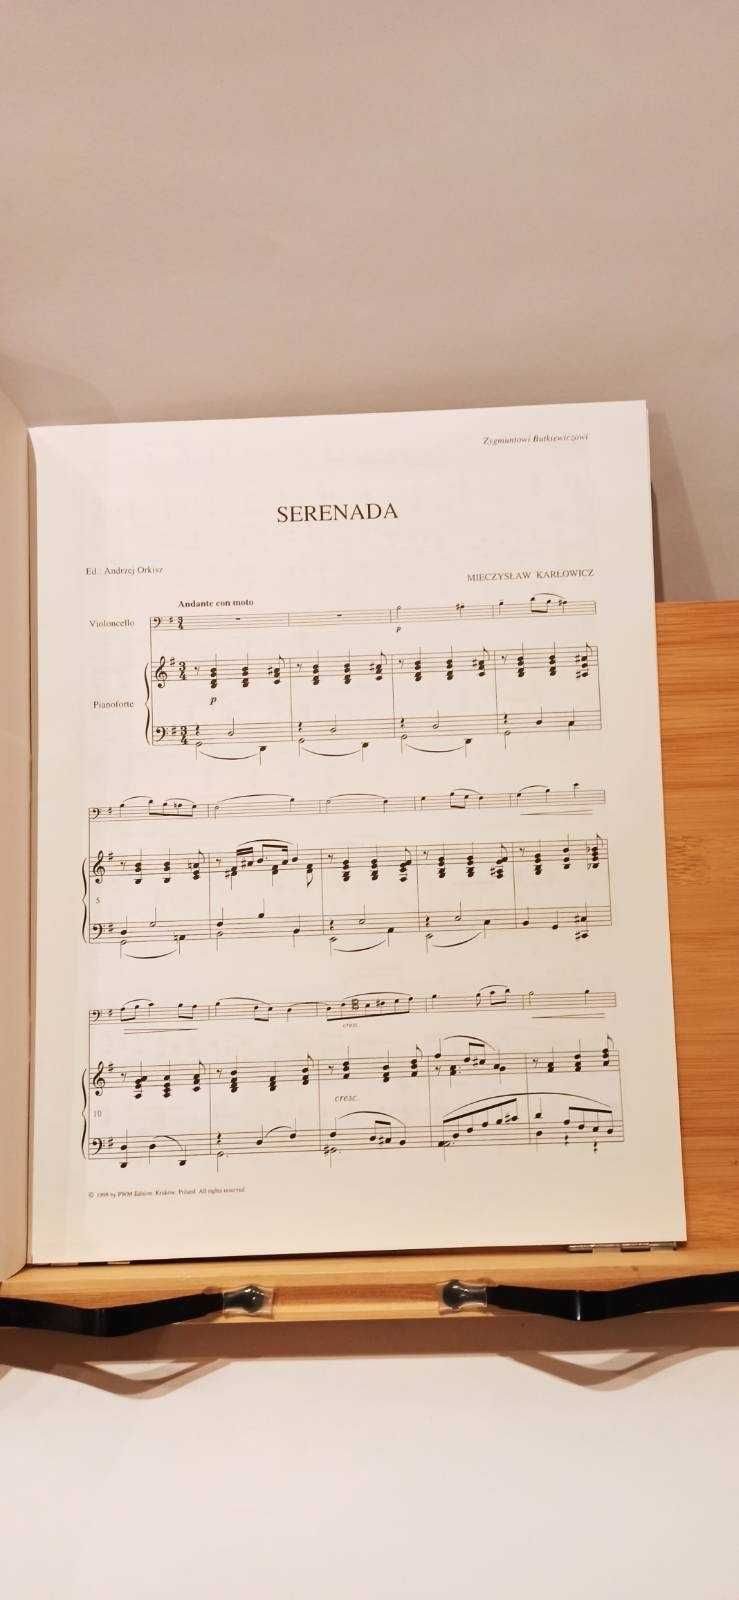 Miniatury wiolonczelowe 32 / Serenada / M. Karłowicz